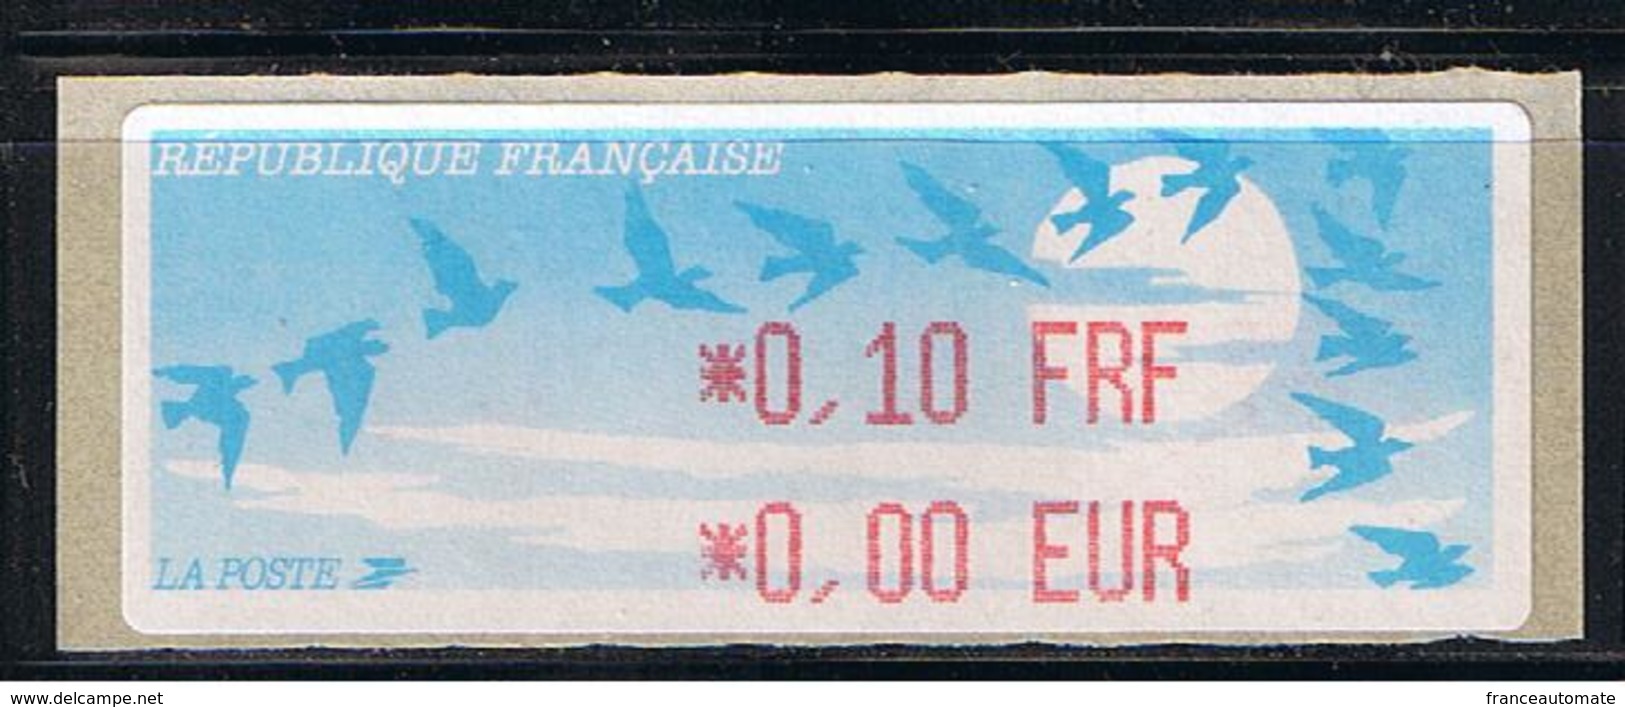 ATM, LISA1,0.10FRF/ 0.00EUR, VARIETE DU PROGRAMME AVEC PARITE FRF/EUR AU 1er JANVIER 1999, PAPIER JUBERT. - 1990 « Oiseaux De Jubert »